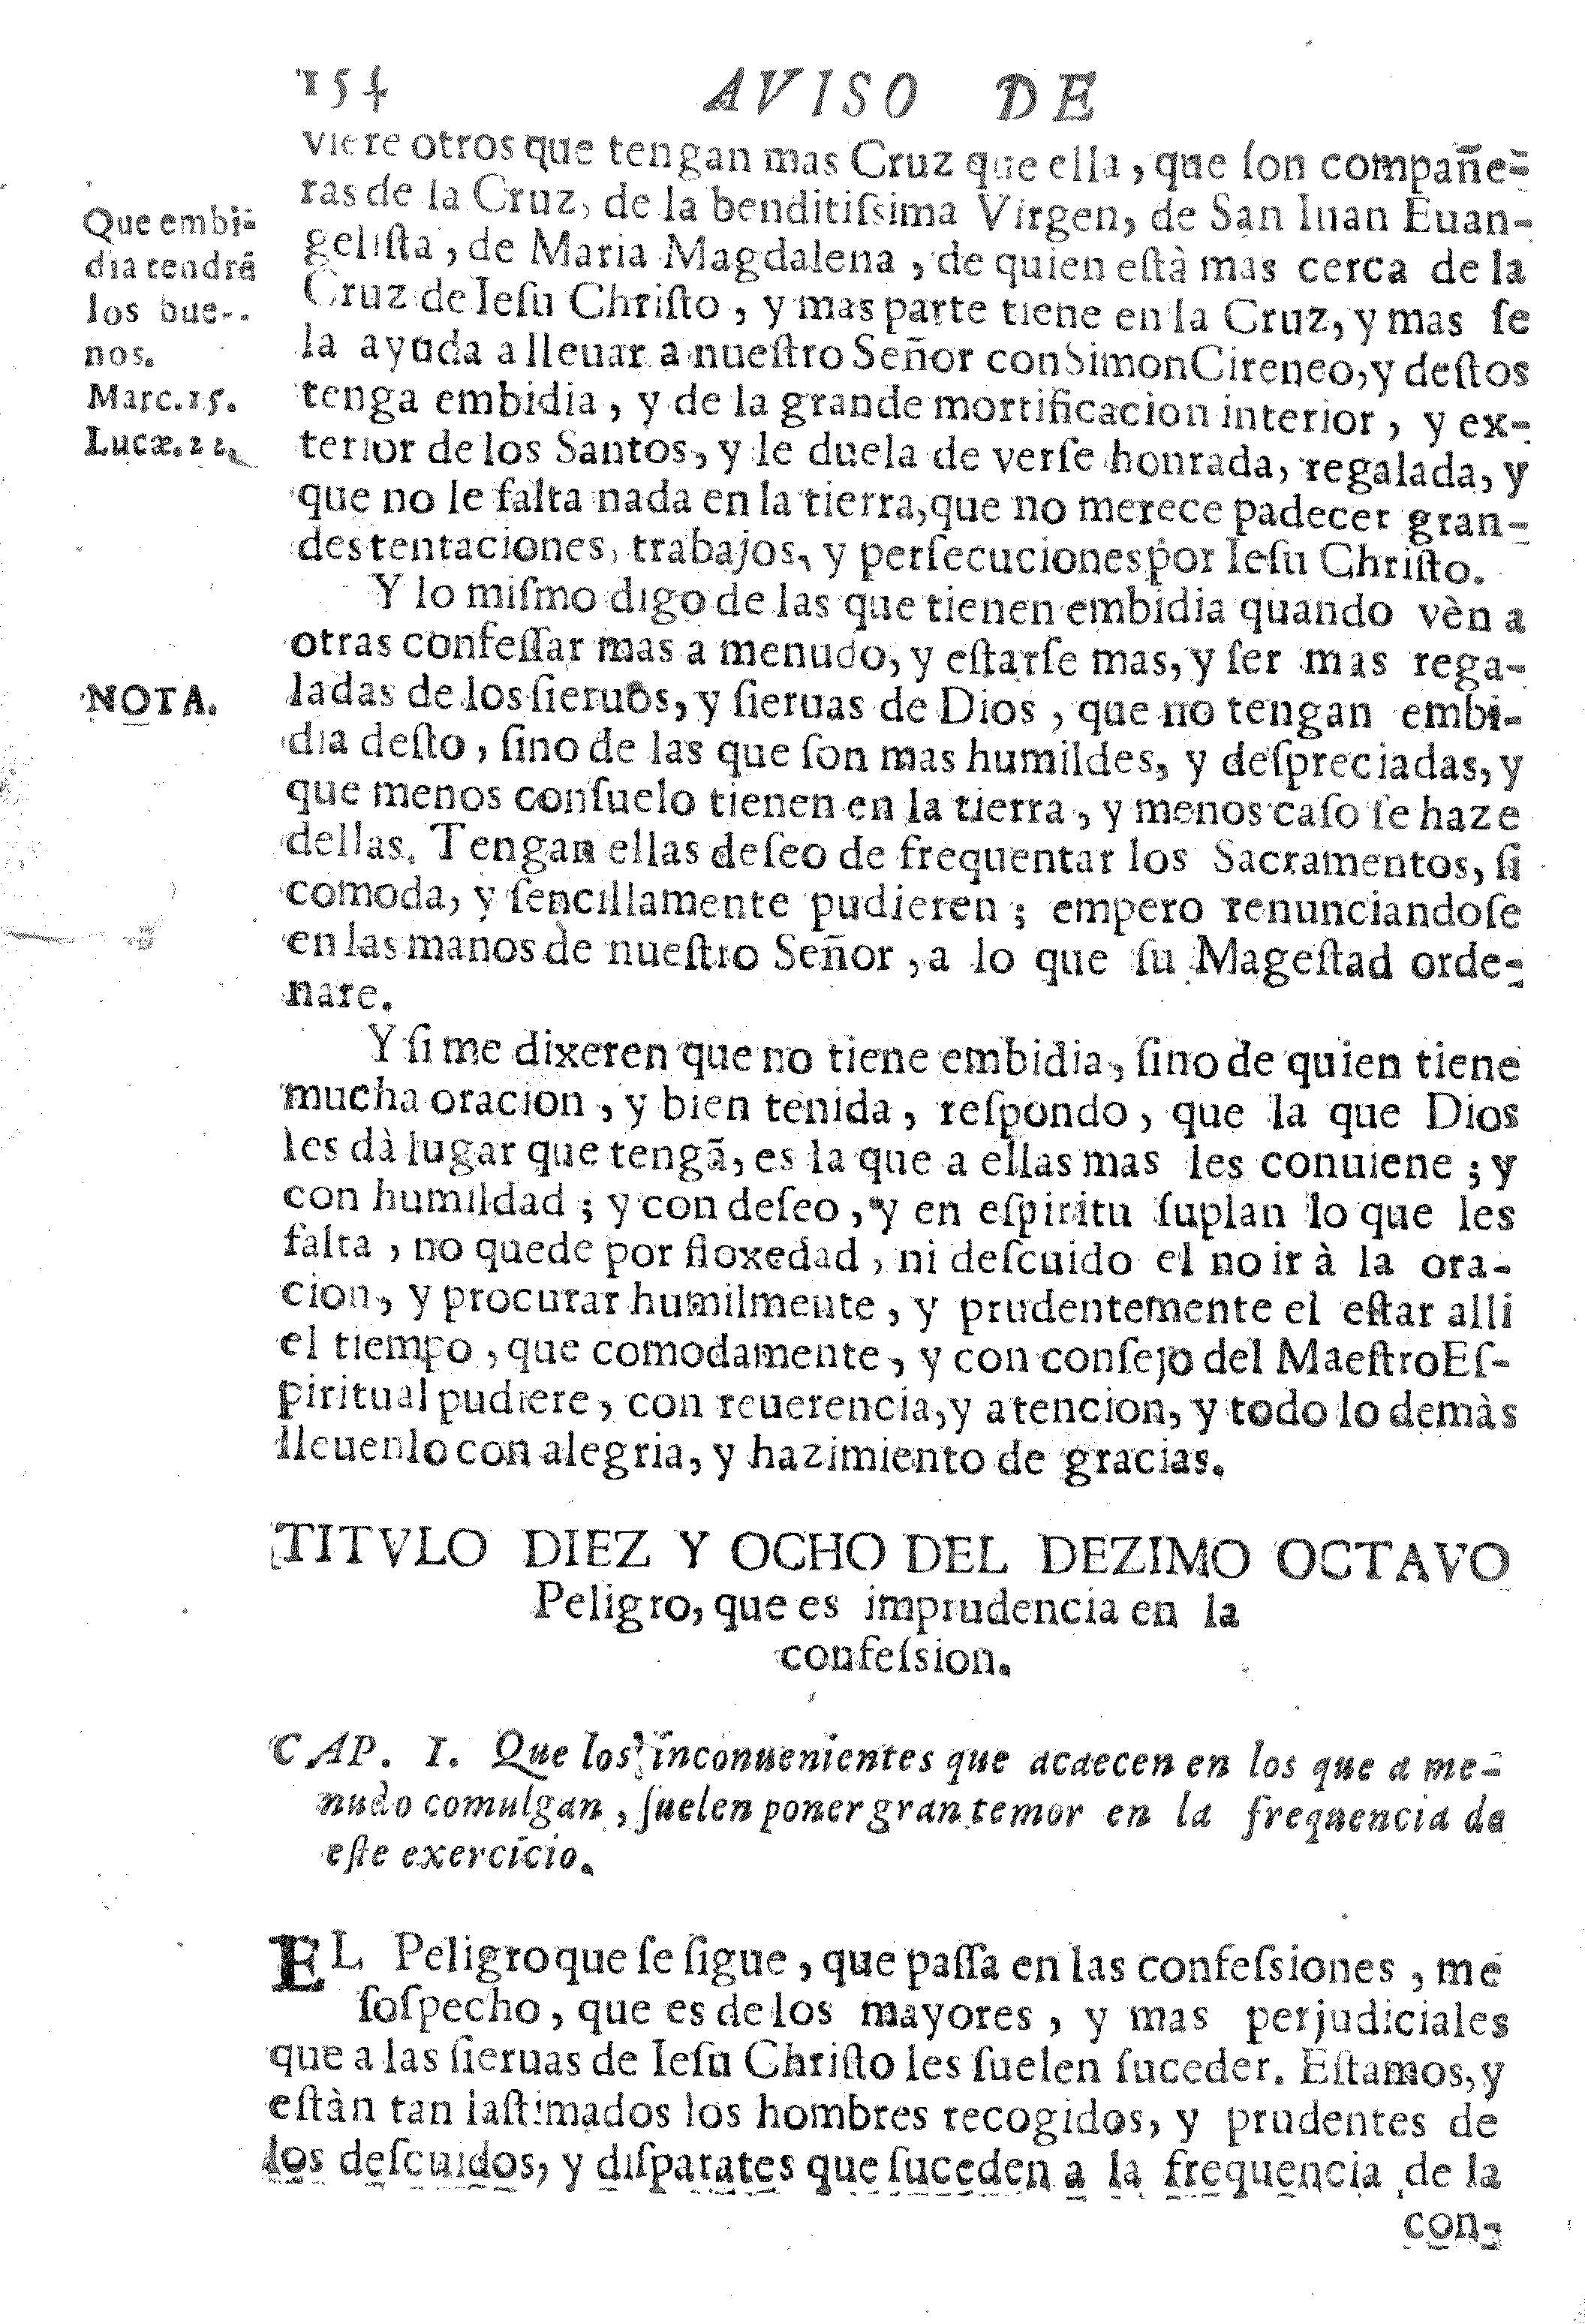 Titvlo diez y ocho del dezimo octavo Peligro, que es imprudencia en la confession